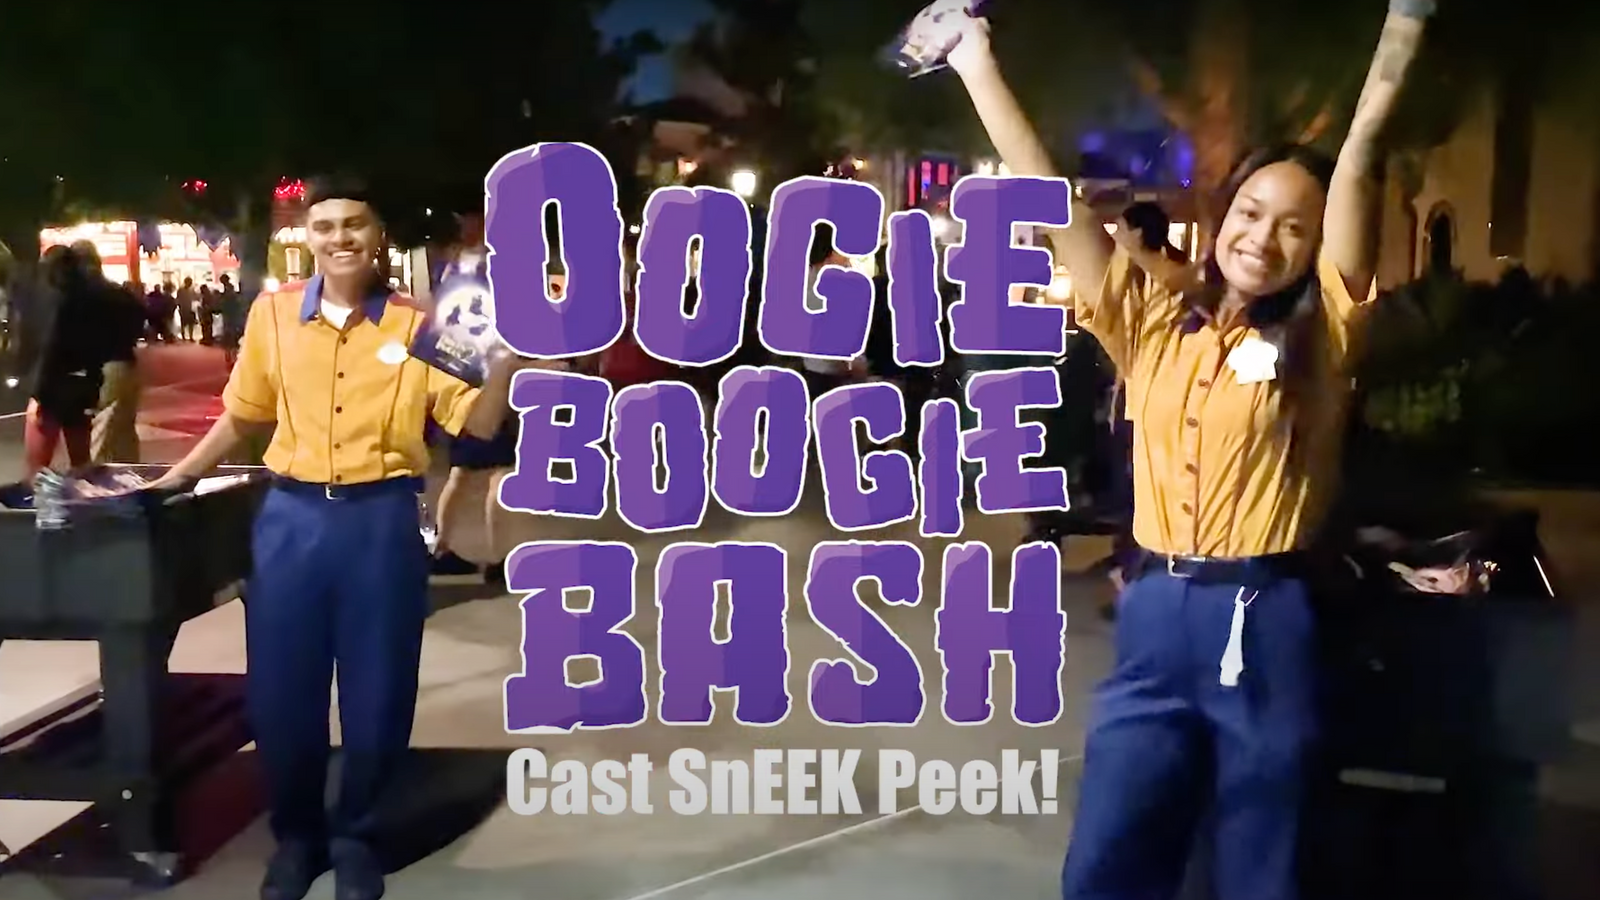 What’s This? Disneyland Cast Members Get an Oogie Boogie Bash SnEEK Peak